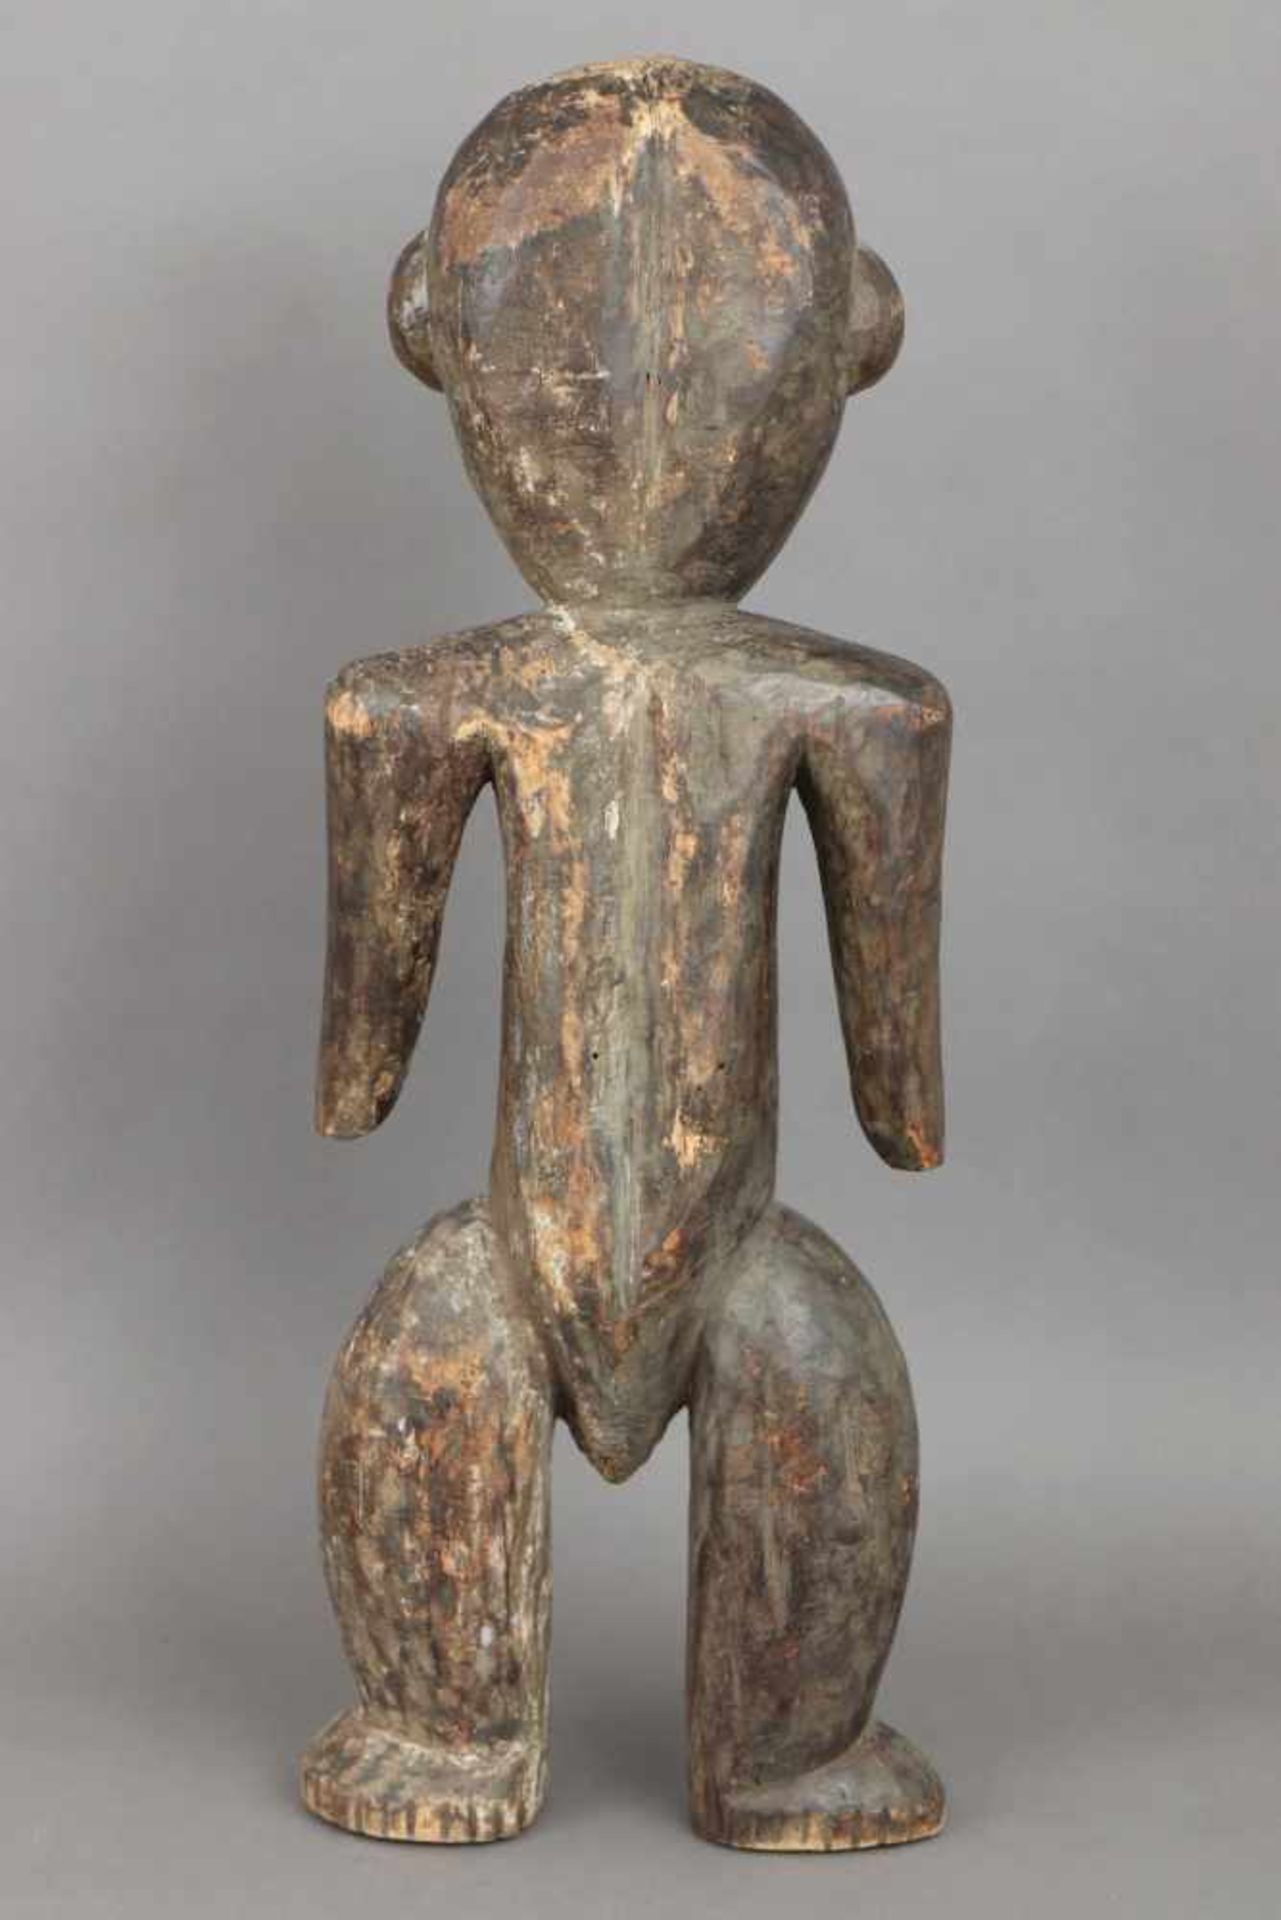 Afrikanische Ahnenfigur Holz, geschnitzt, geschwärzt und im Gesicht weiß gekalkt (Kaolin), wohl - Bild 2 aus 4